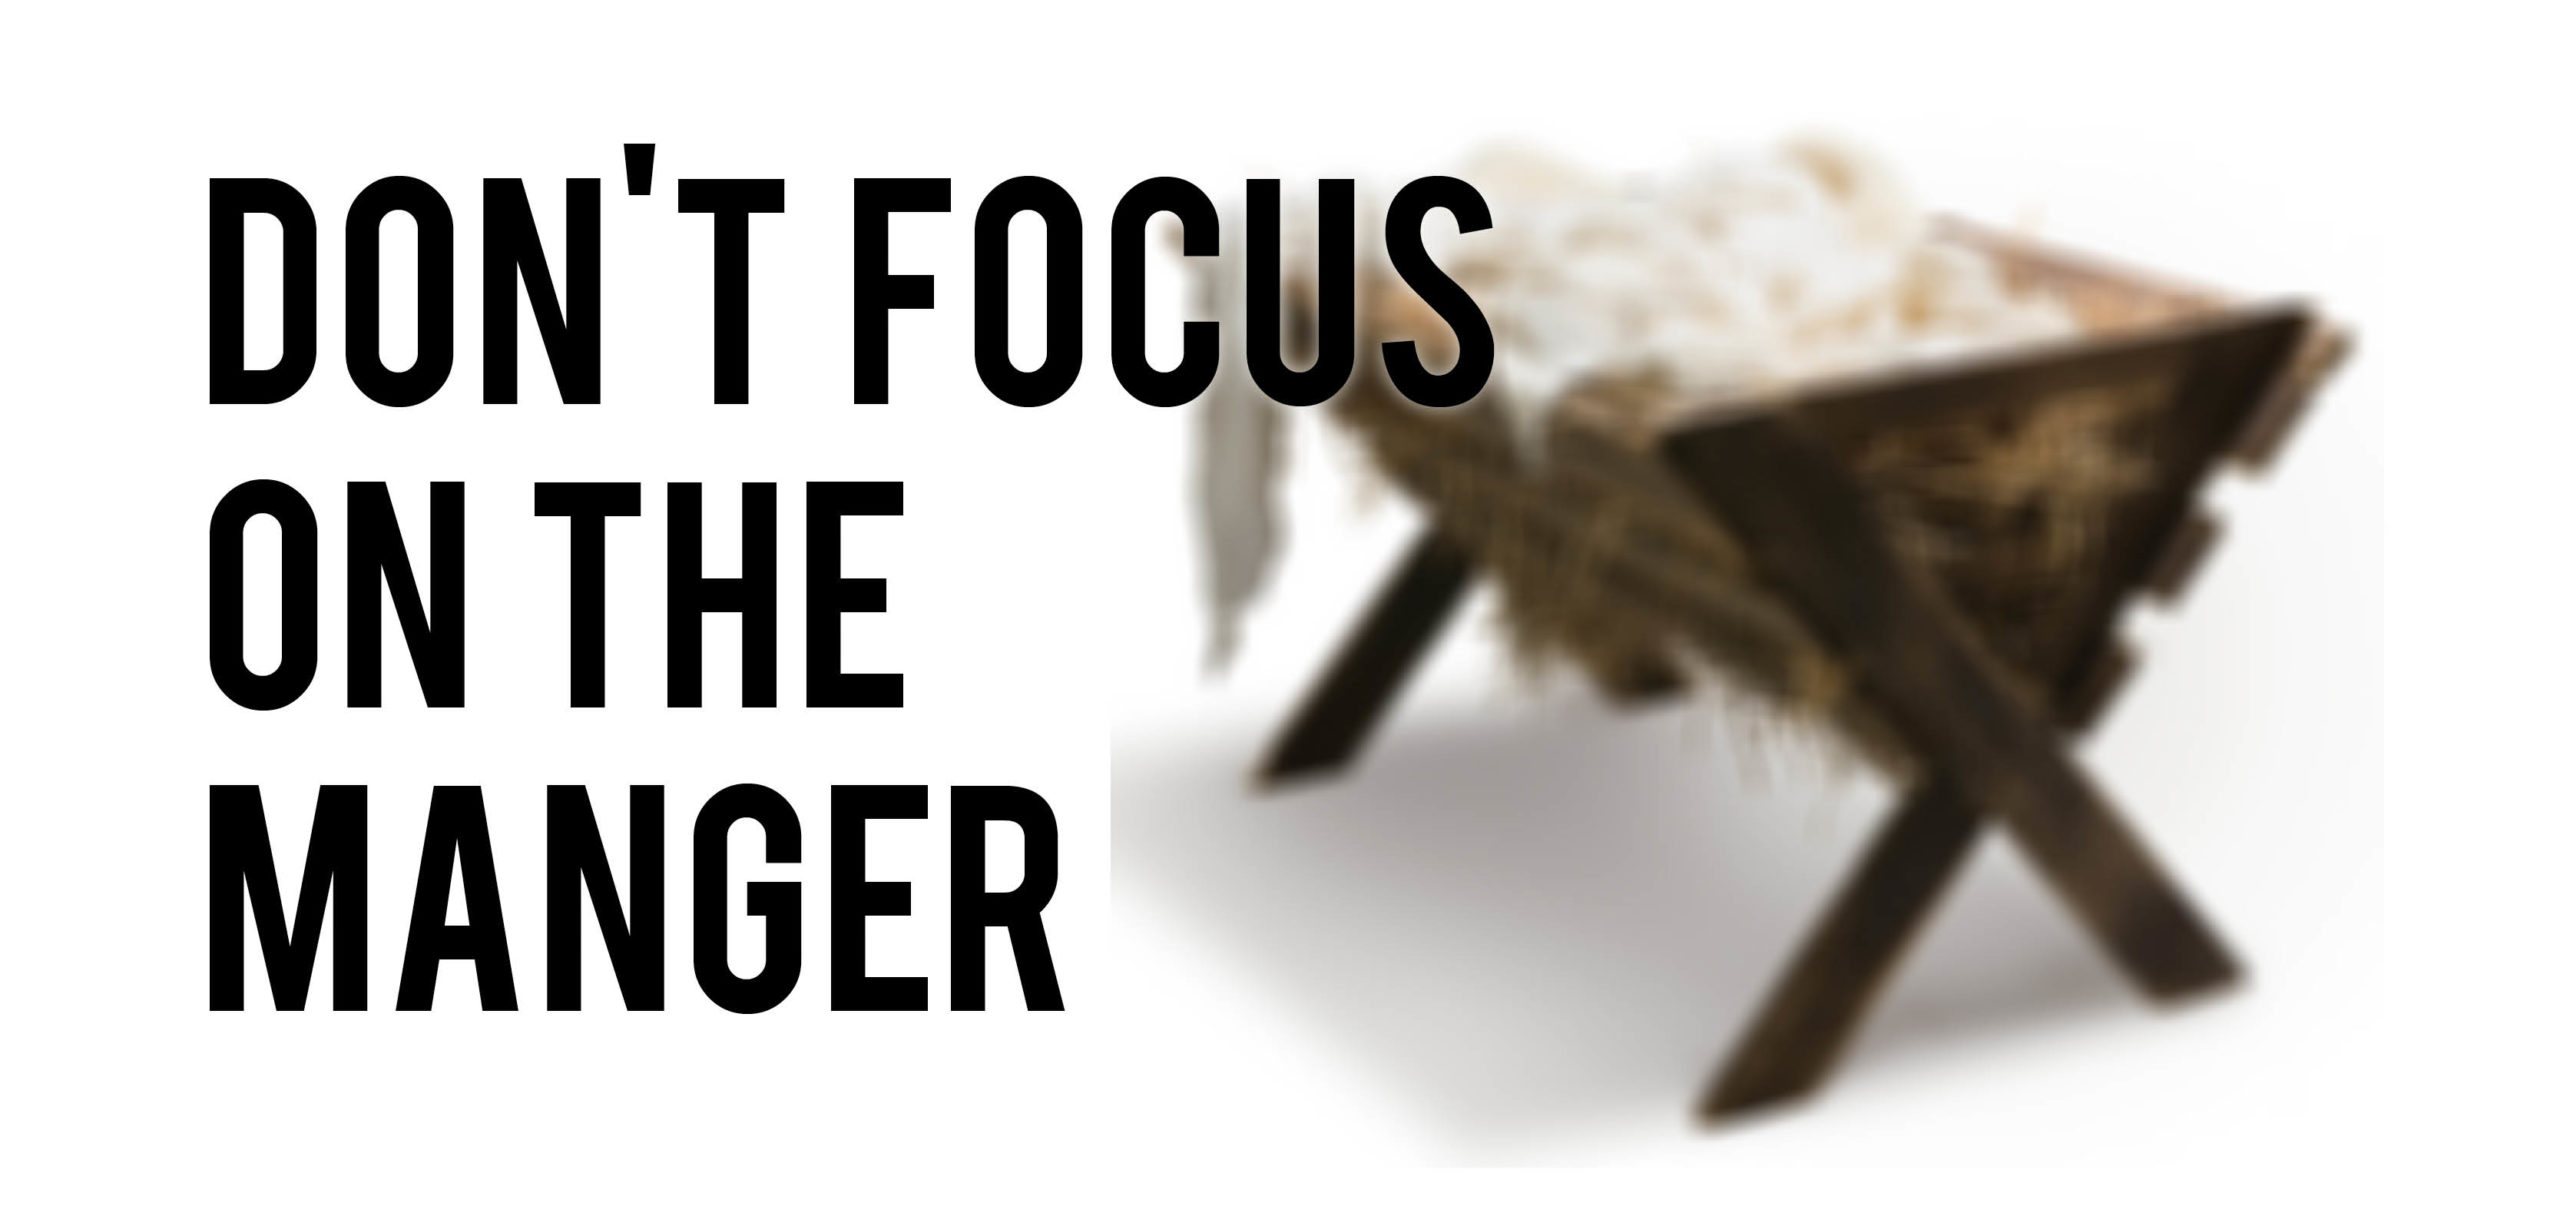 Don't Focus On The Manger